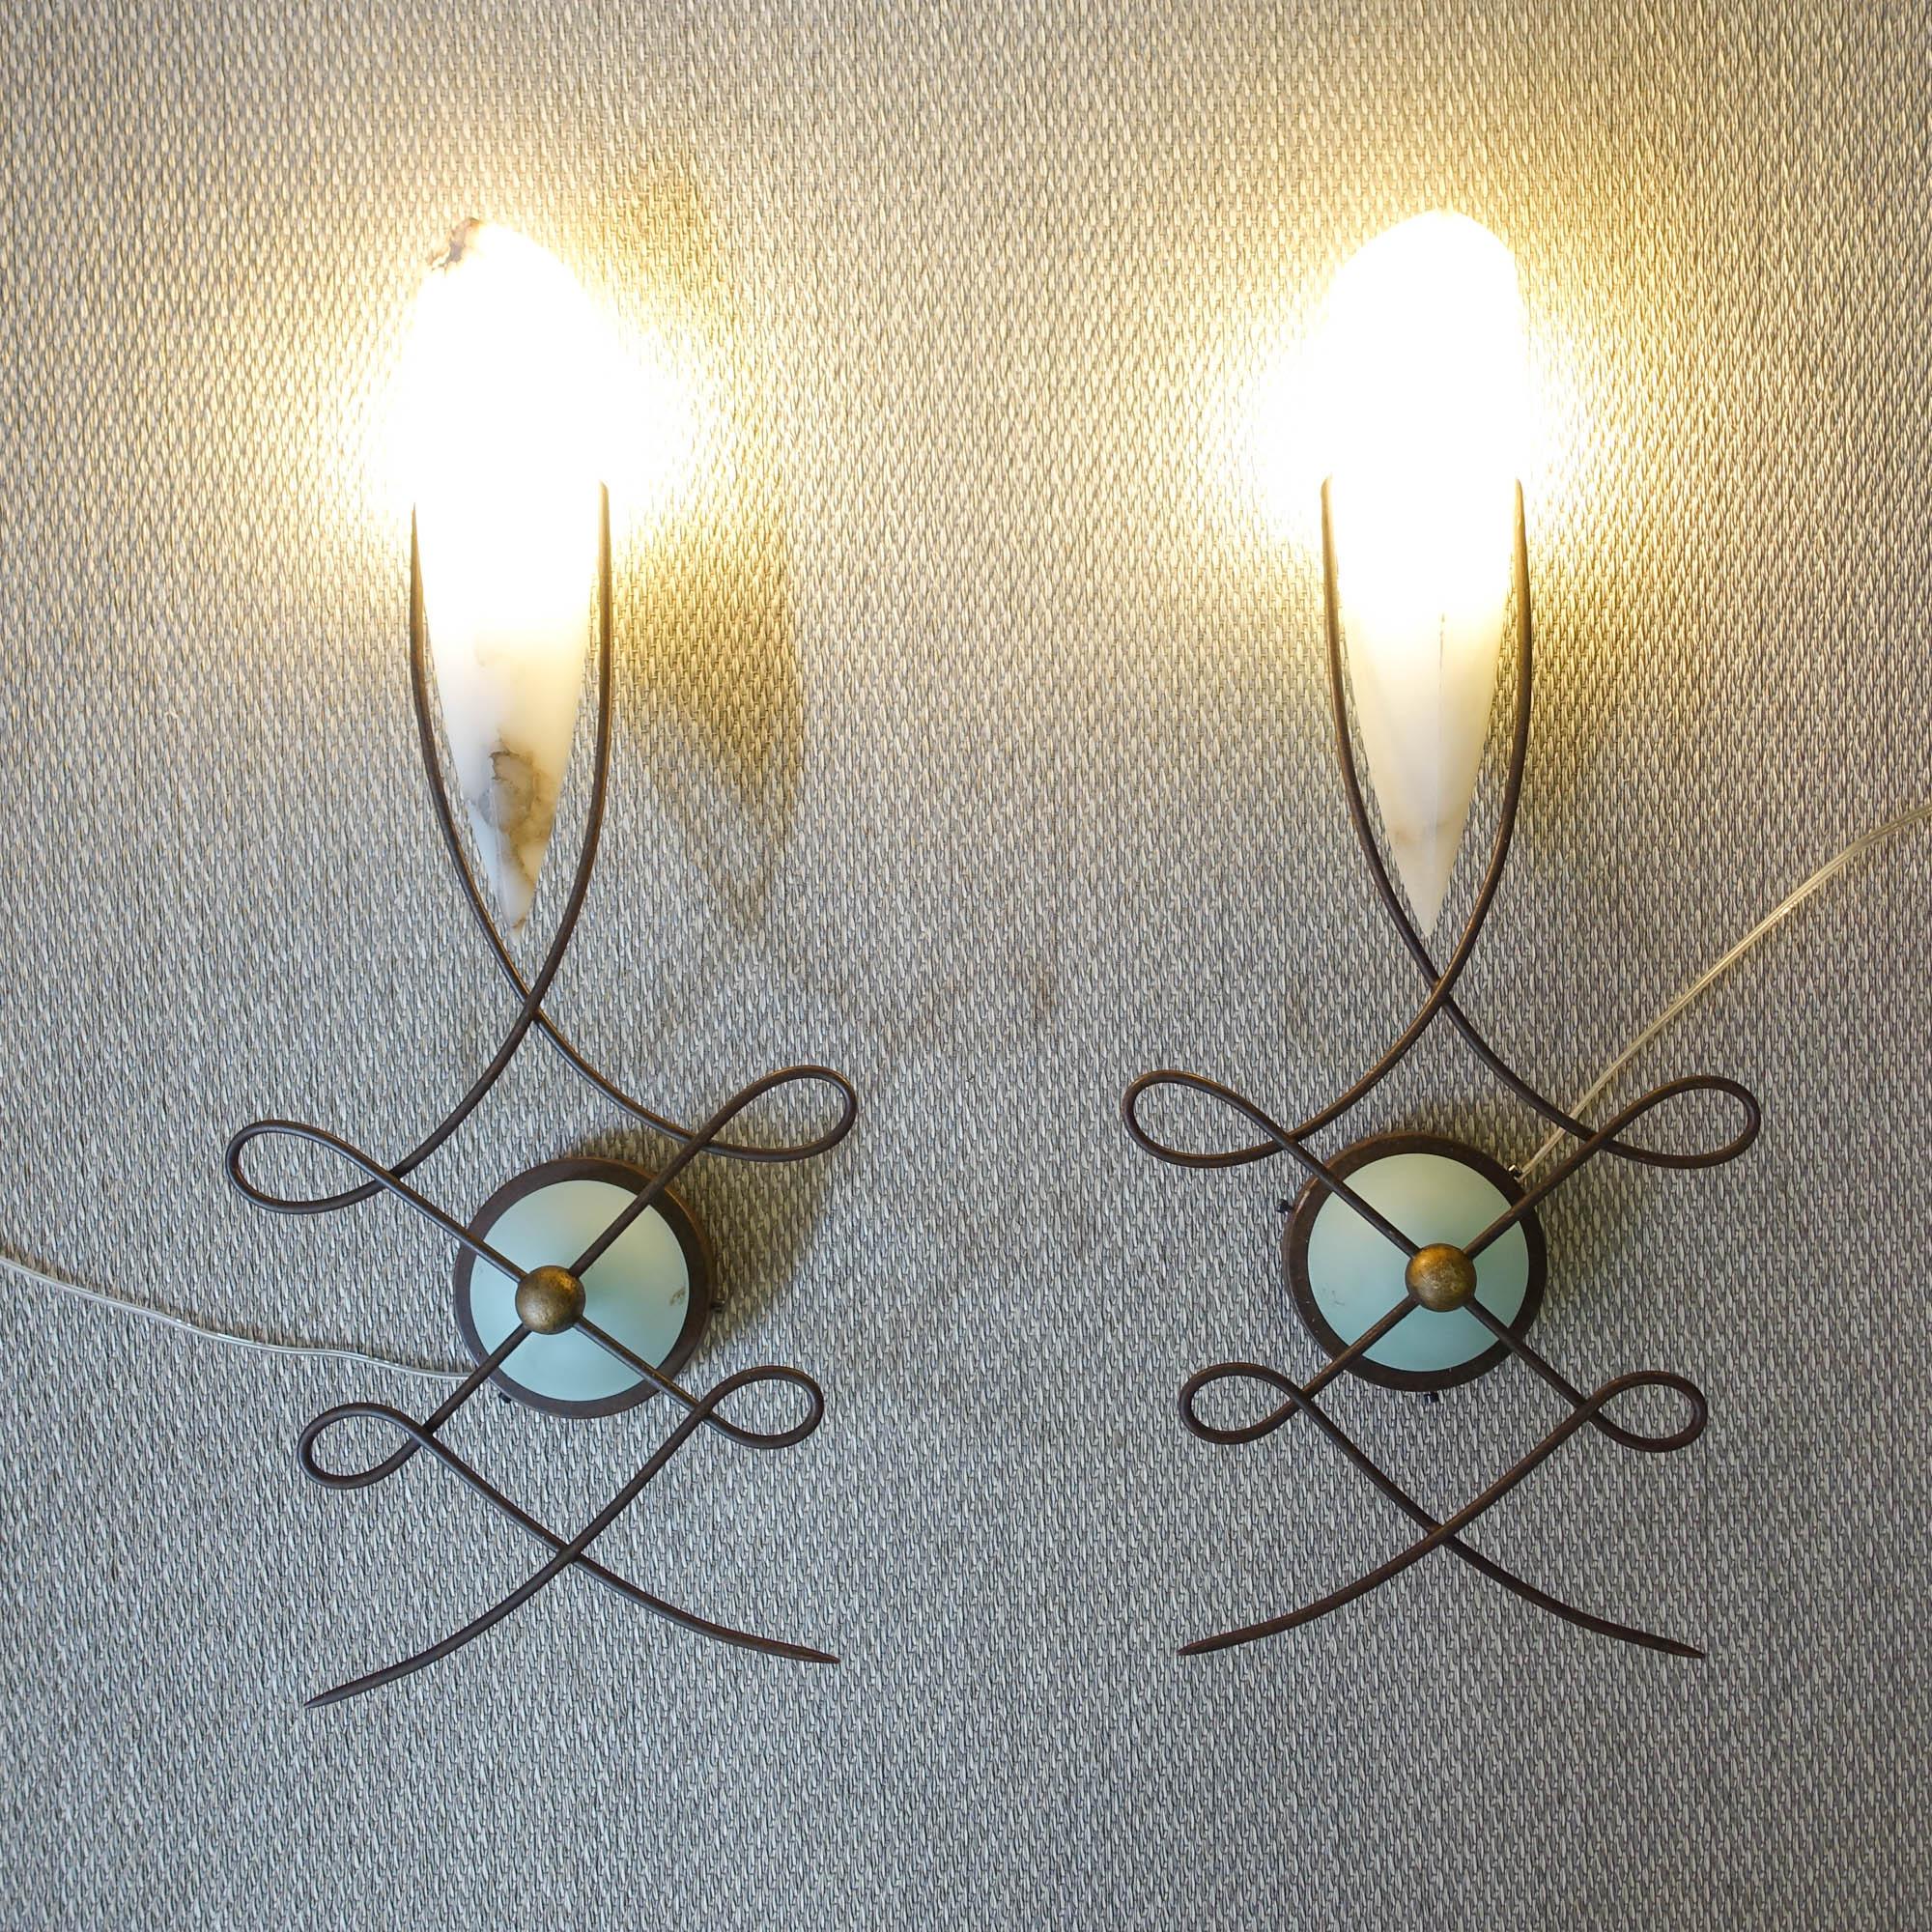 Dieses Paar Wandlampen, Modell Louvre, wurde in den 1980er Jahren von Jean-François Crochet für Terzani in Italien entworfen. Diese Lampen sind aus handgefertigtem Metall mit einer rostigen Oberfläche und einem fein gearbeiteten, cremefarbenen